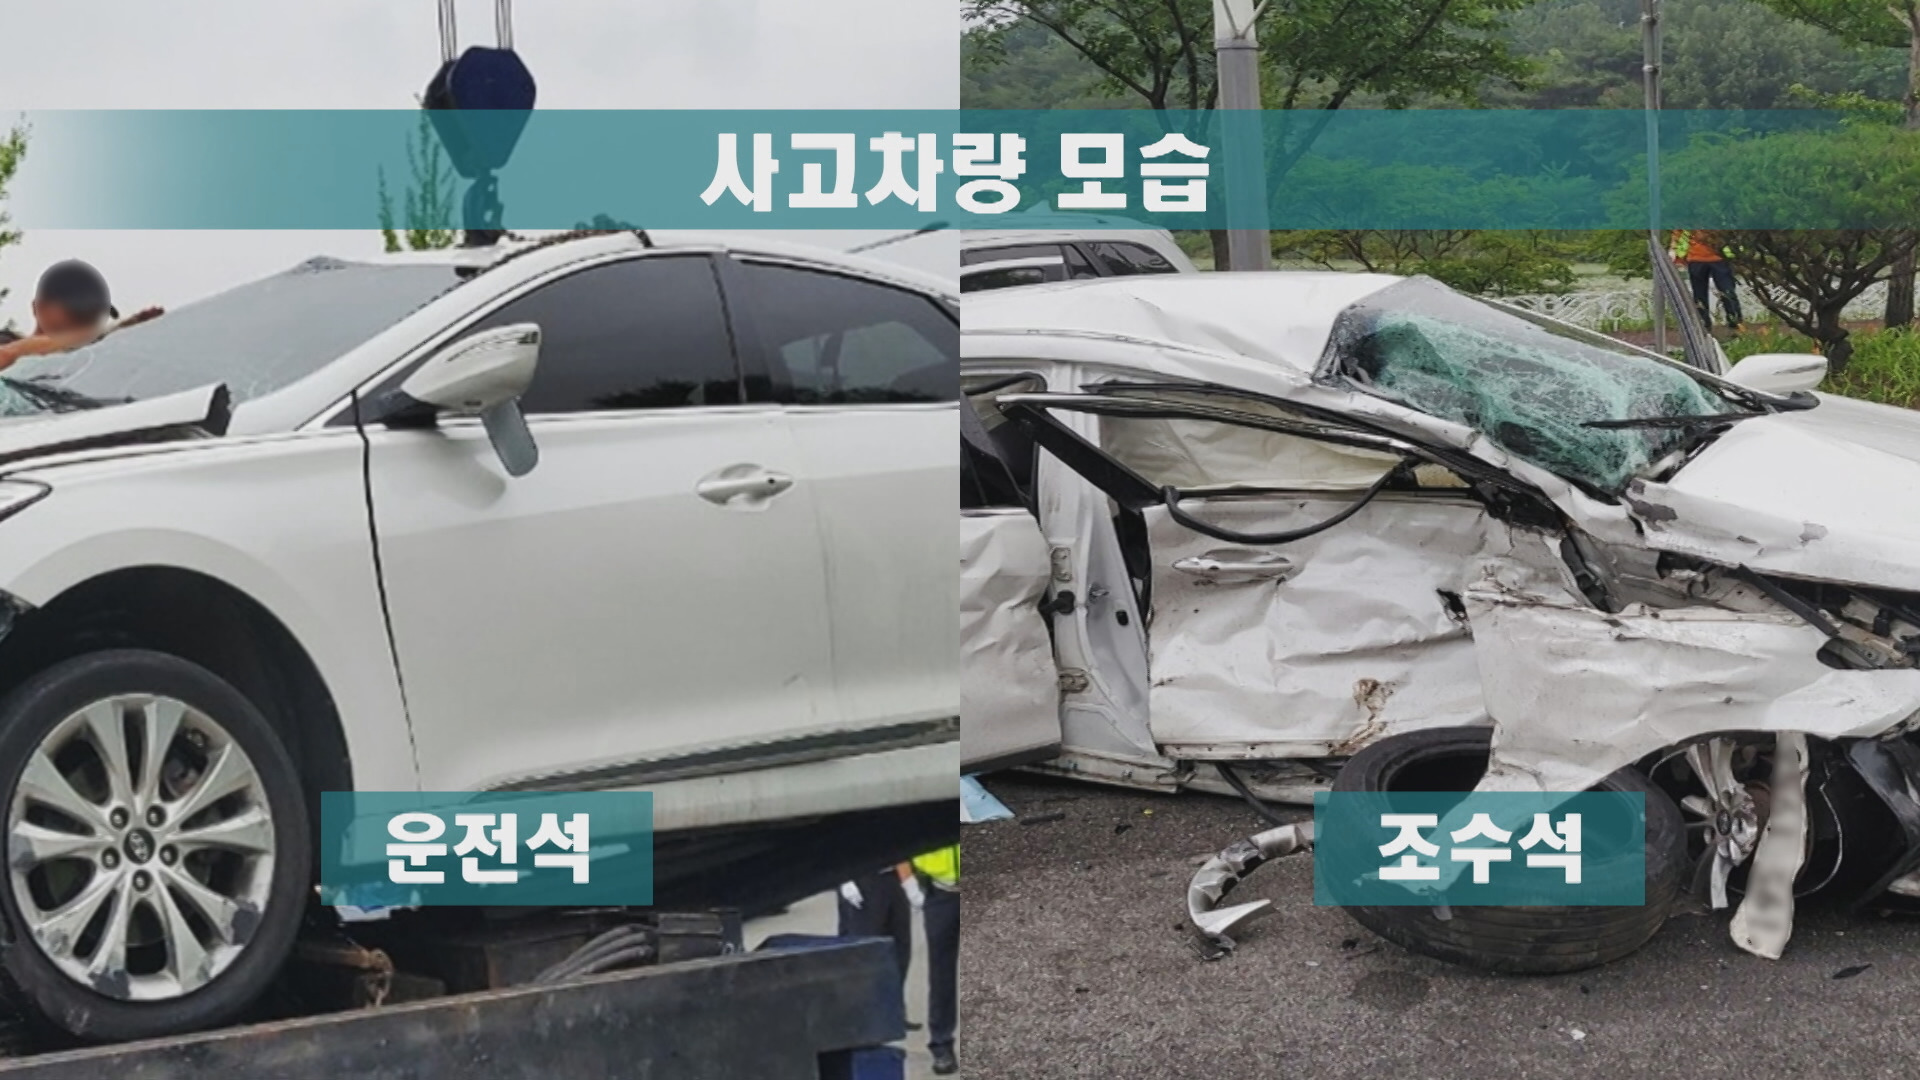 사고 차량의 운전석과 조수석을 비교한 사진.